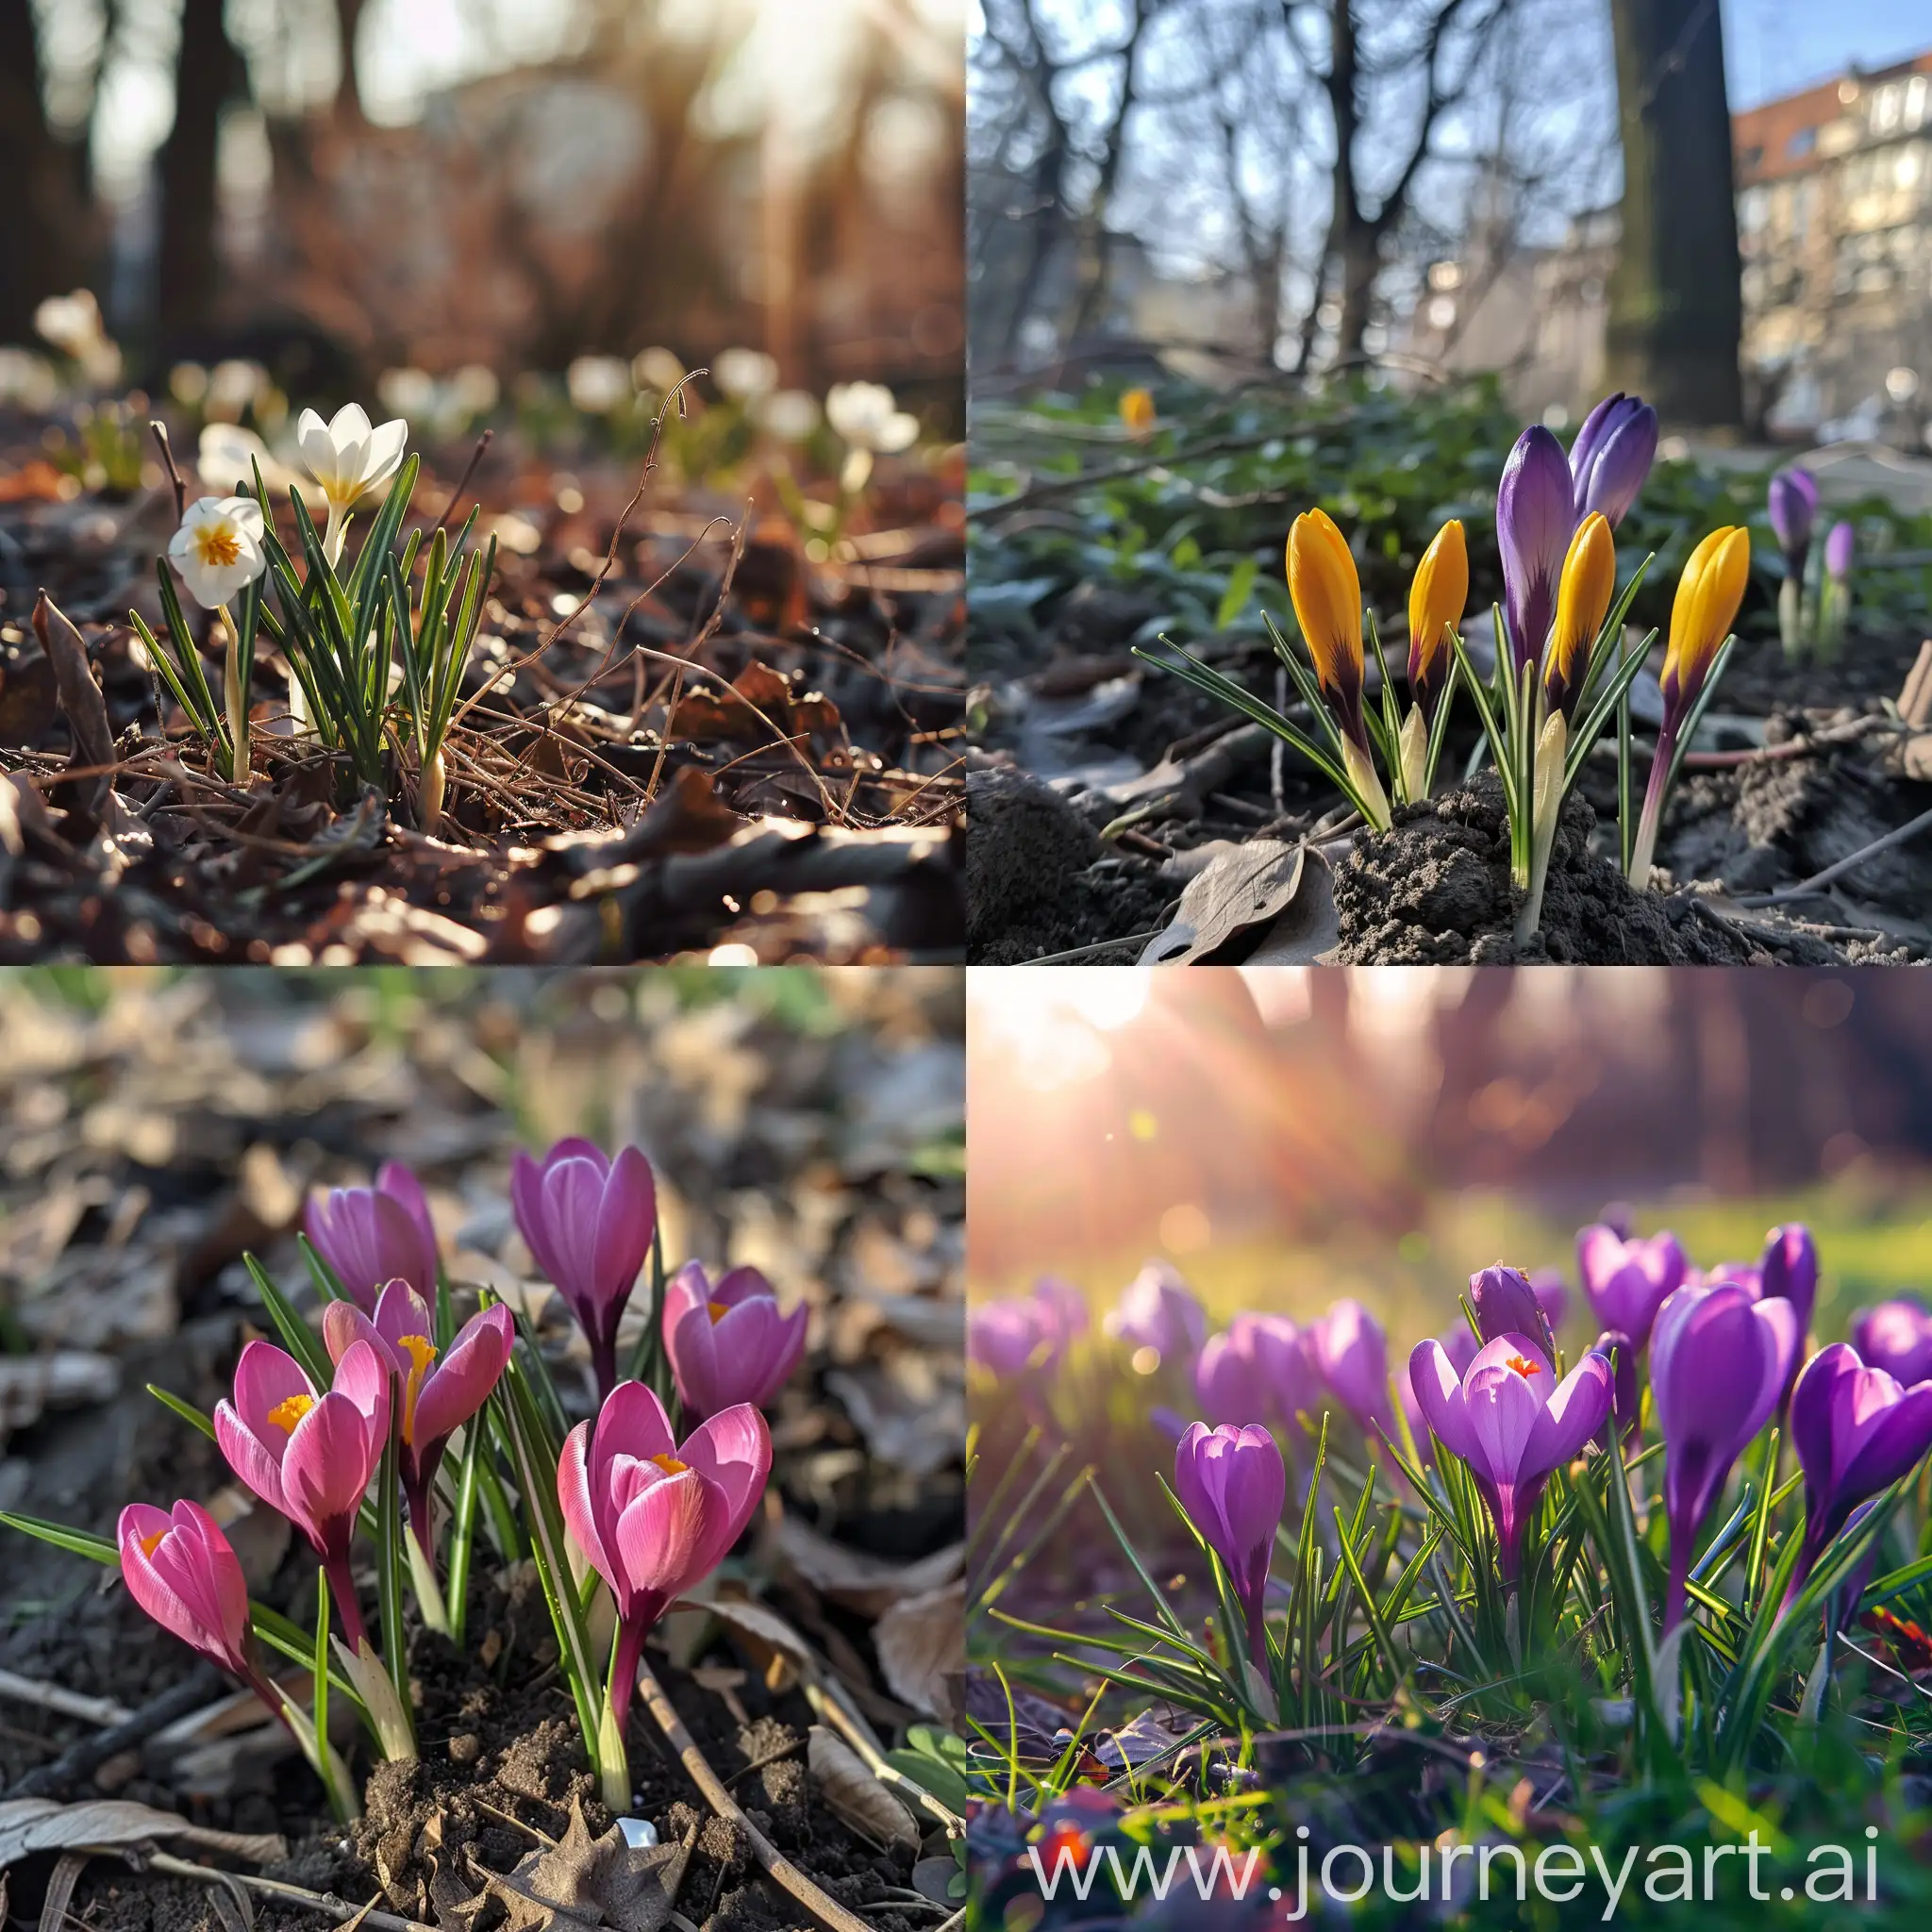 Vibrant-Spring-Blossoms-in-11-Aspect-Ratio-Image-No-80733